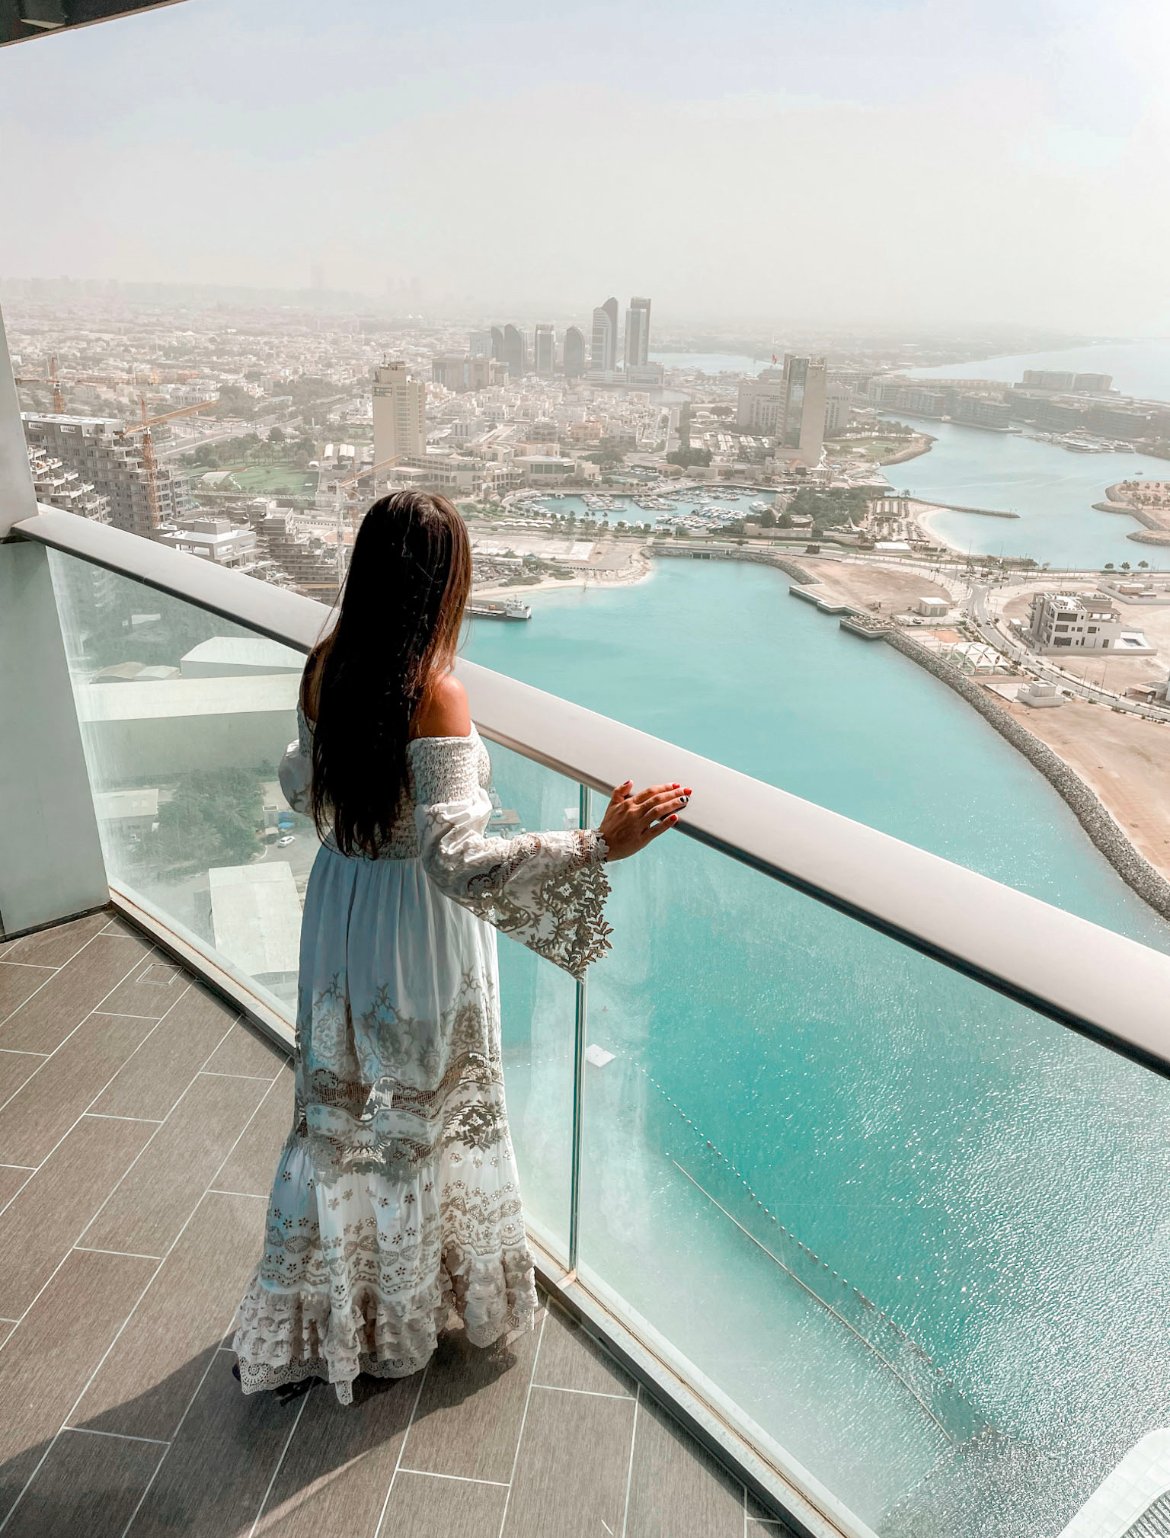 Grand Hyatt Hotel in Abu Dhabi, visit the UAE